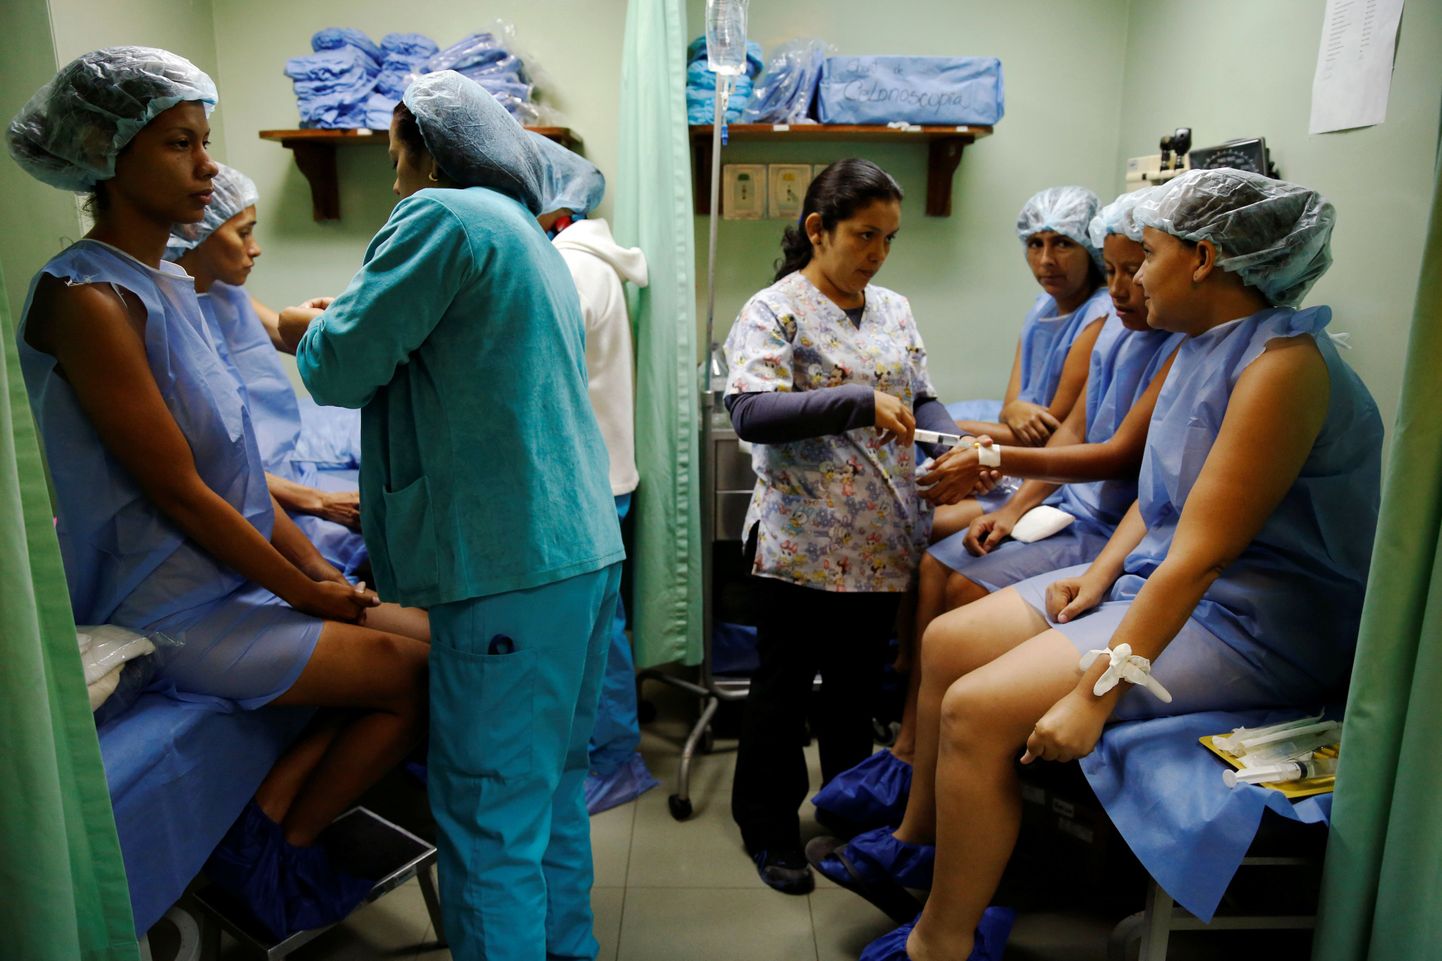 Naised ootamas steriliseerimisoperatsioonile minekut Caracase haiglas.